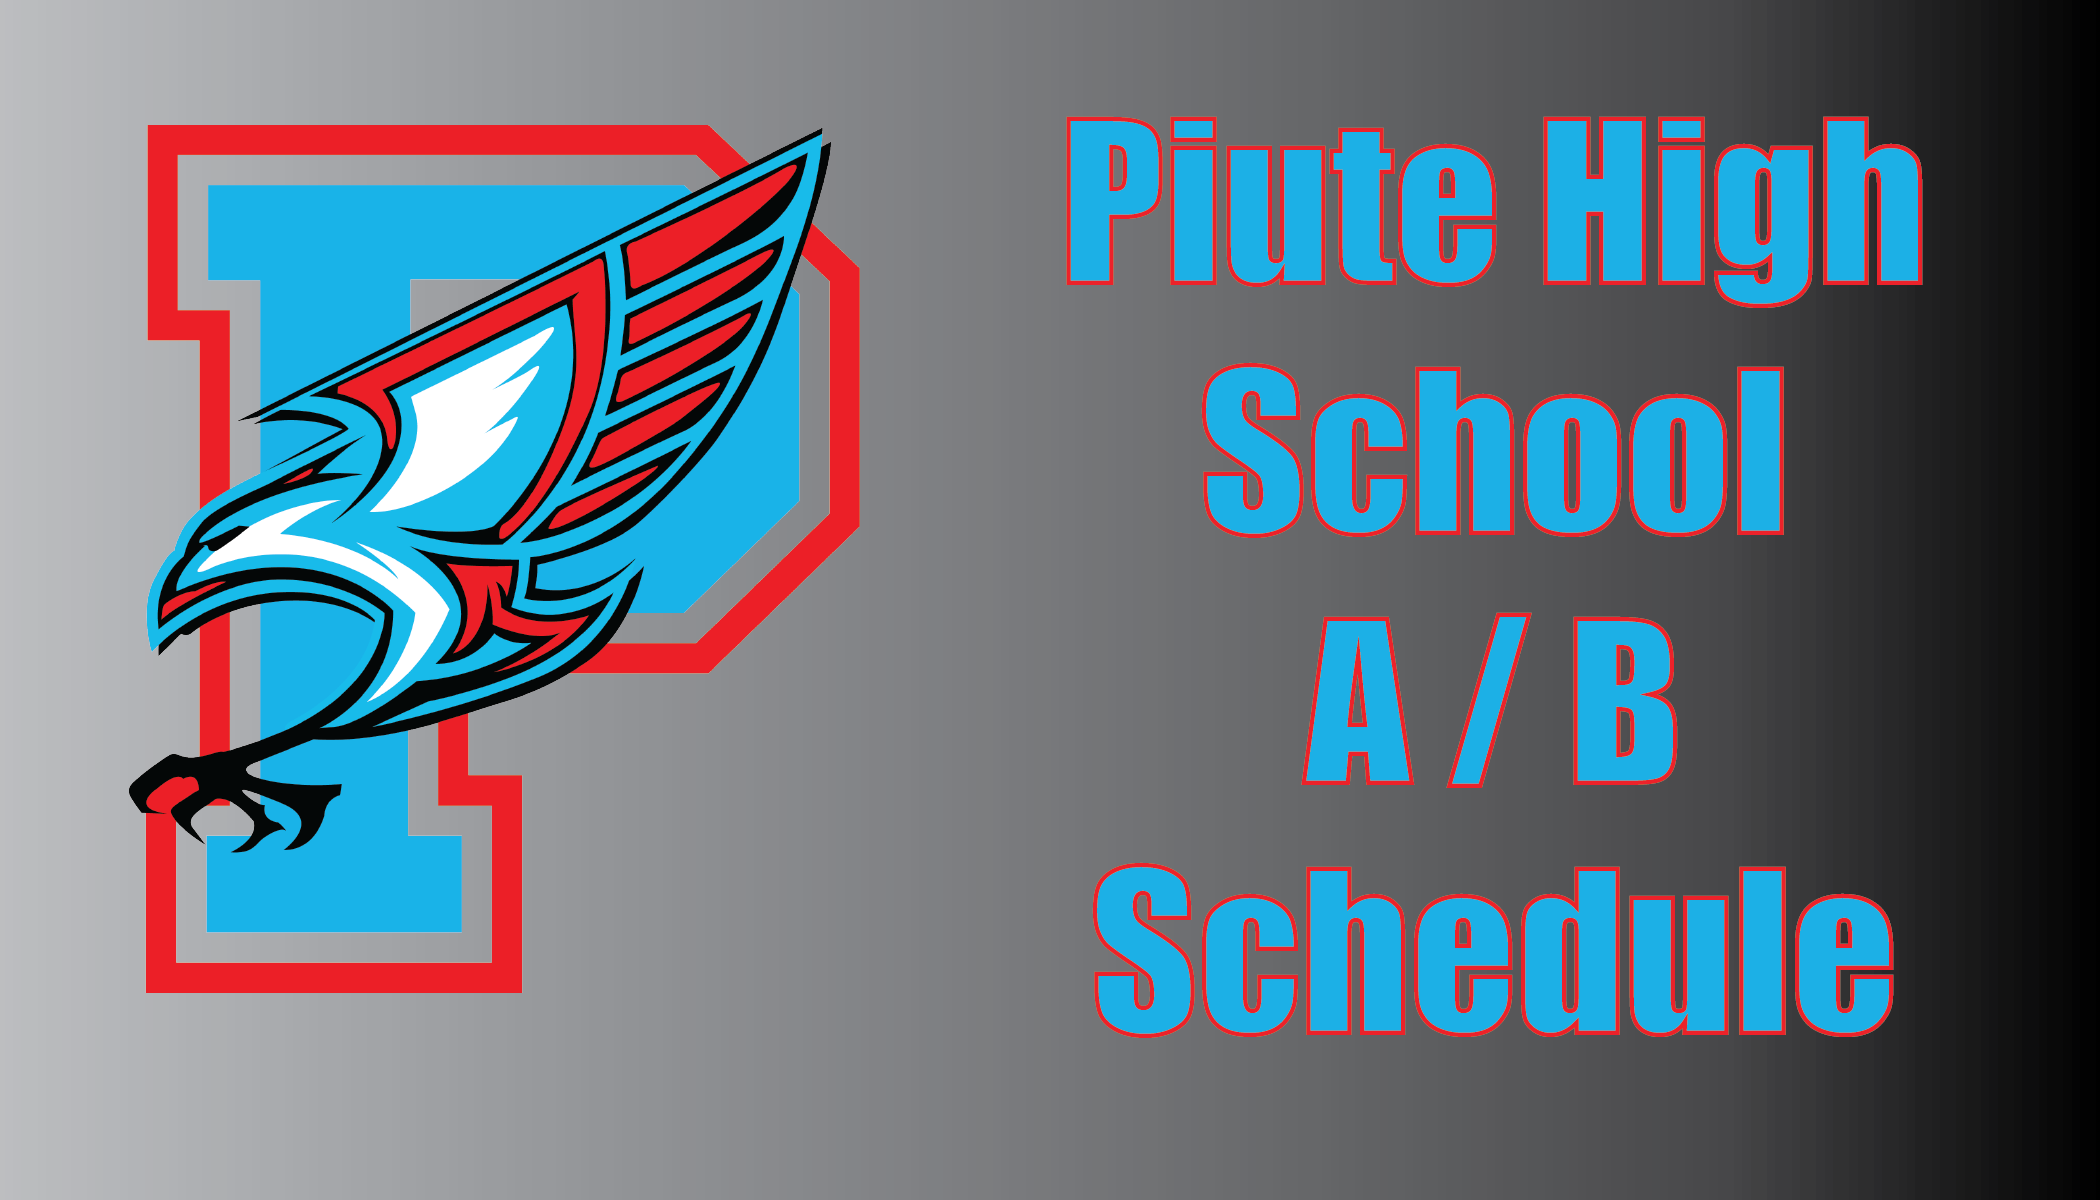 Piute High School A/B Schedule